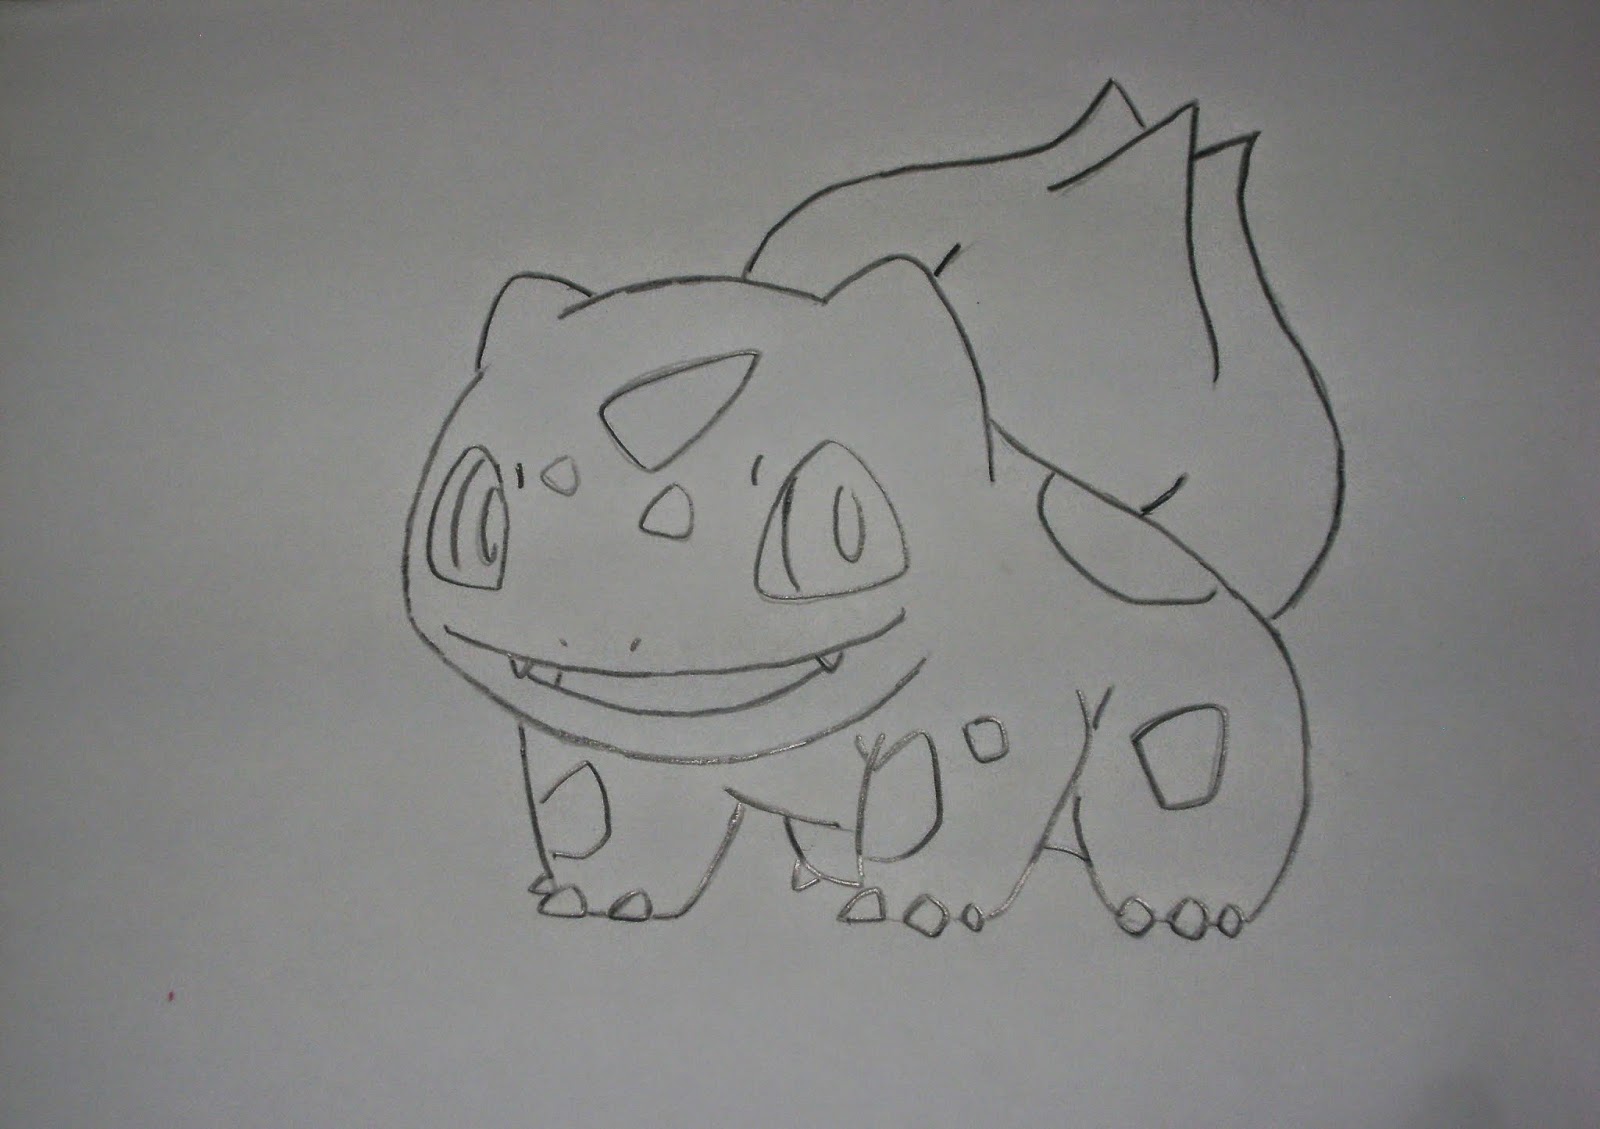 Como desenhar o Pokémon Bulbassauro